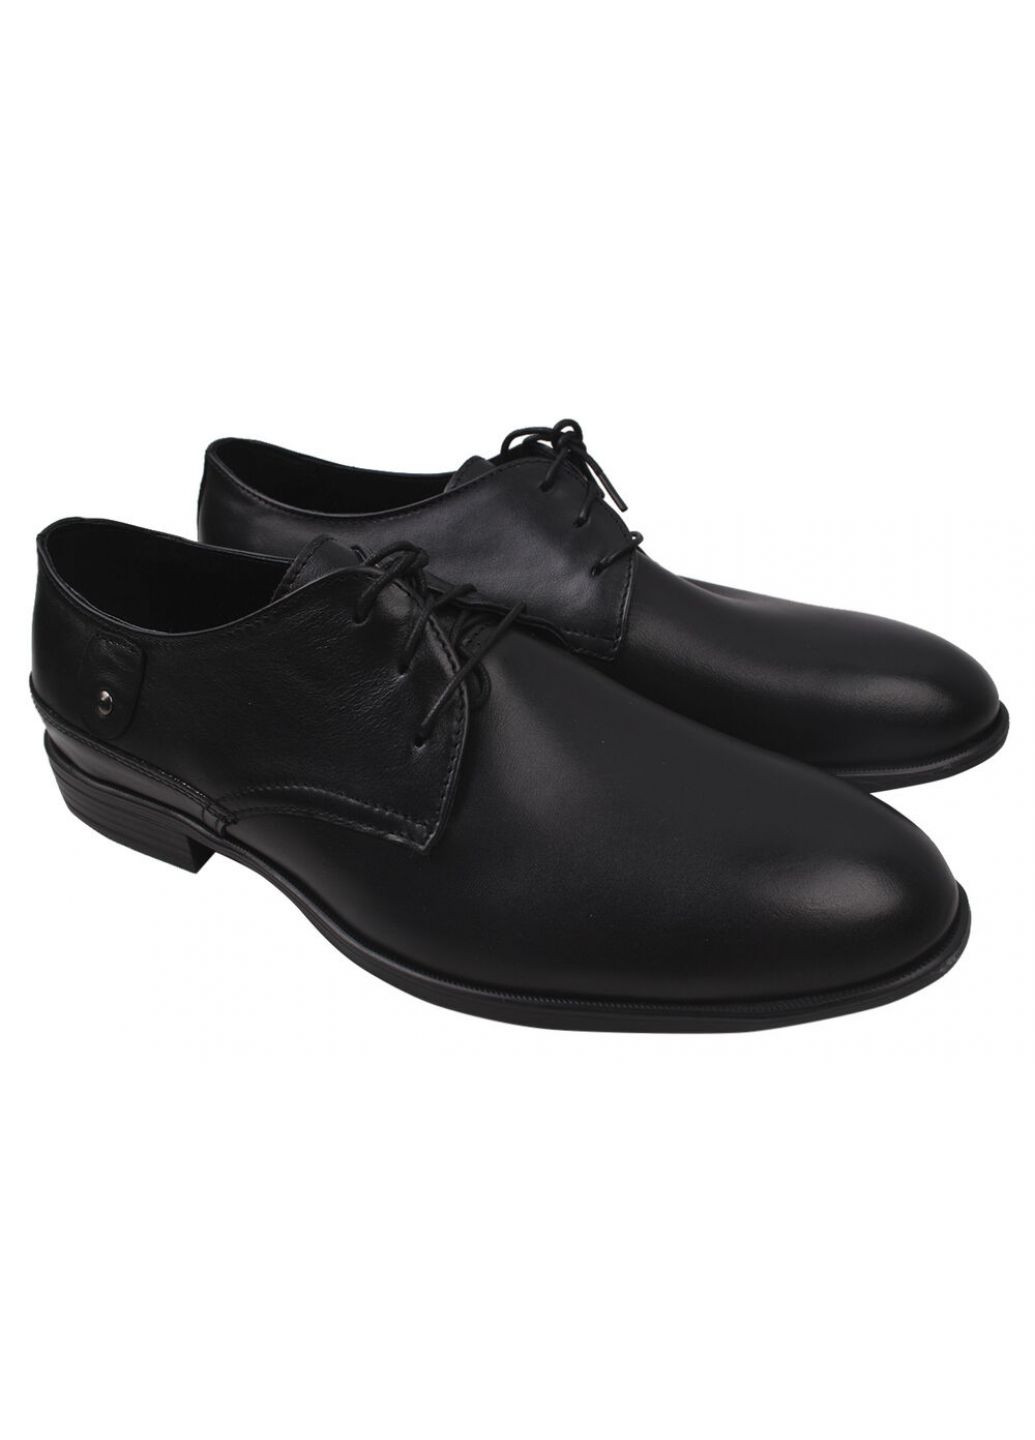 Черные туфли класика мужские натуральная кожа, цвет черный Vadrus